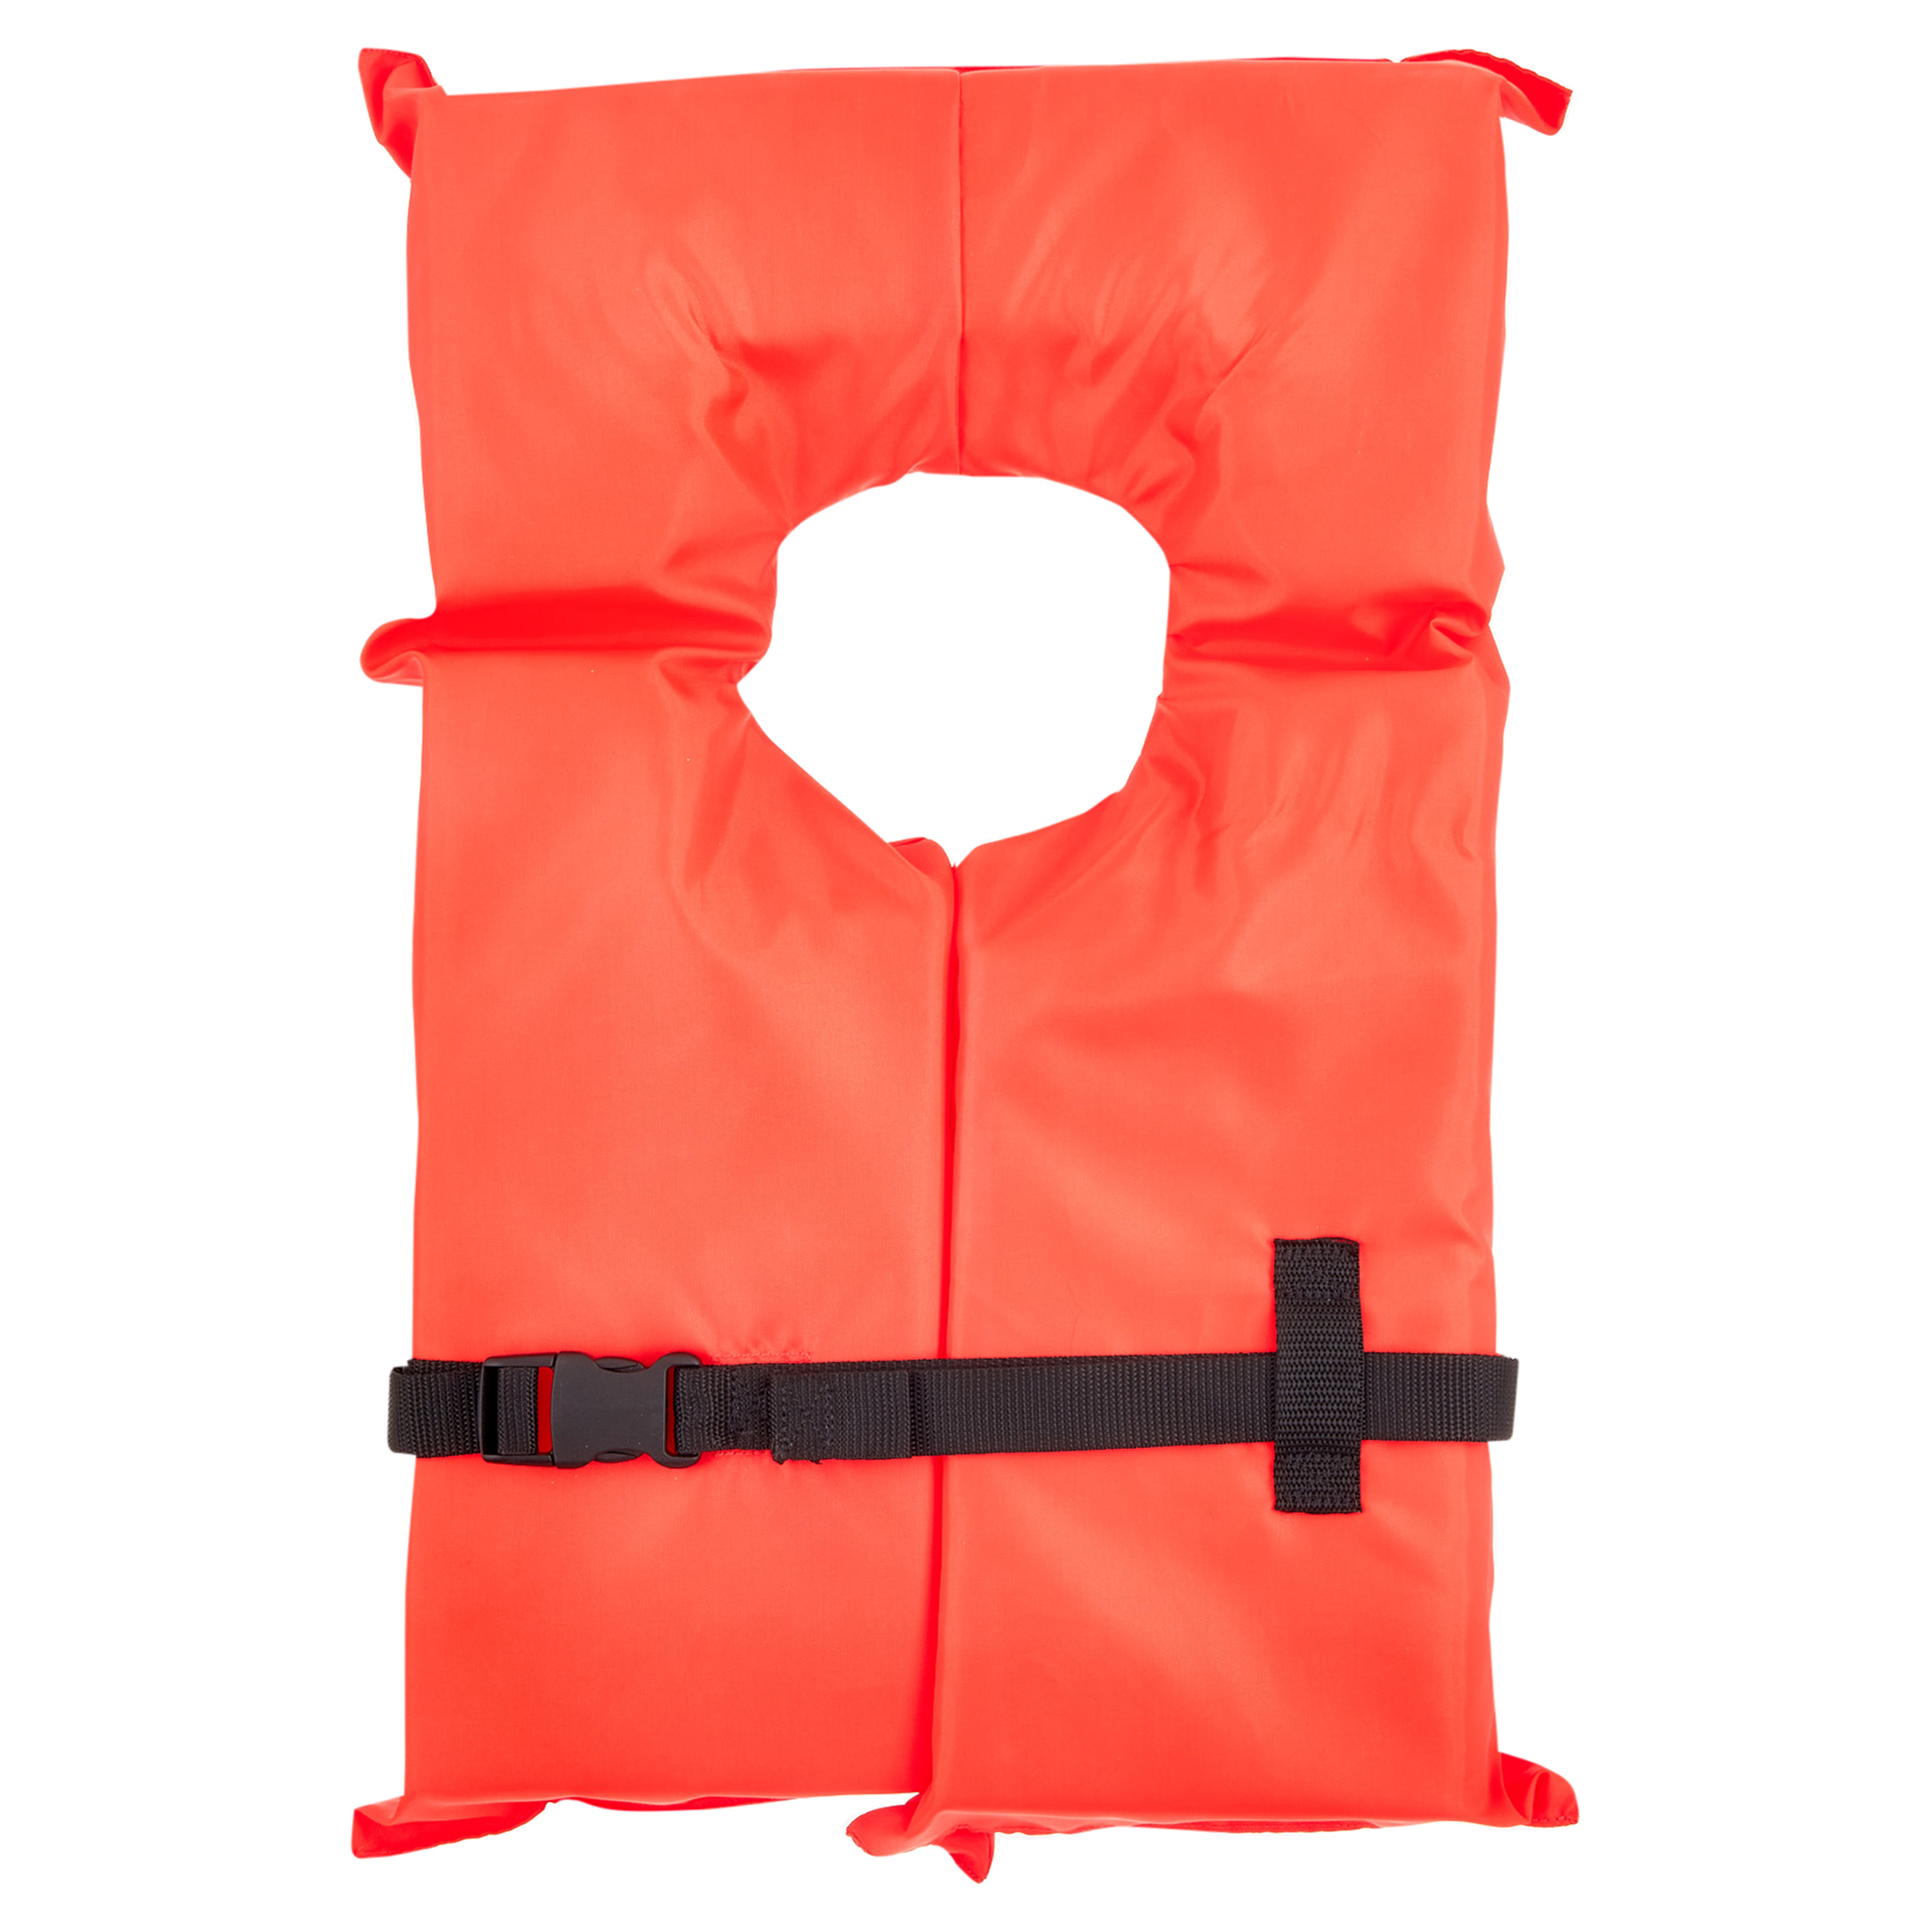 X2O U.S. Coast Guard Approved Type II Adult Life Jacket, Orange - image 1 of 9